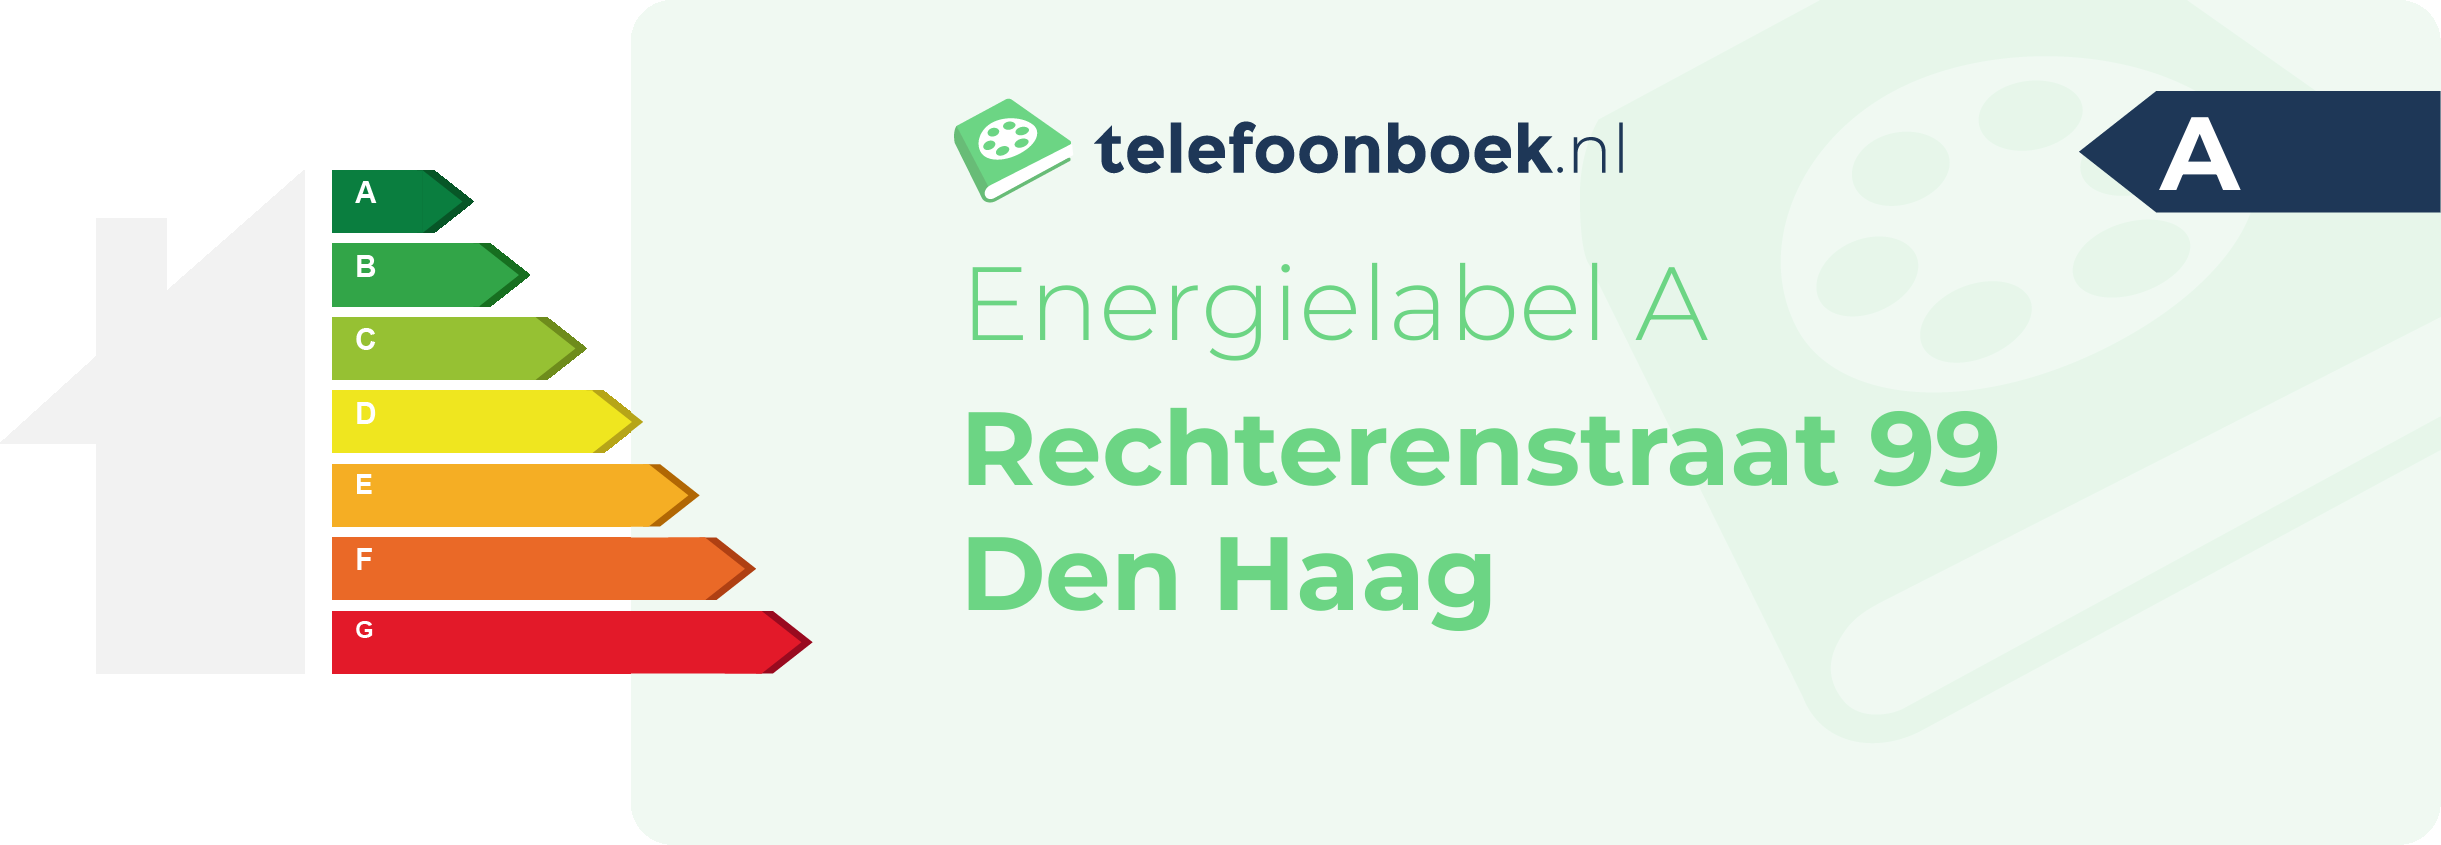 Energielabel Rechterenstraat 99 Den Haag